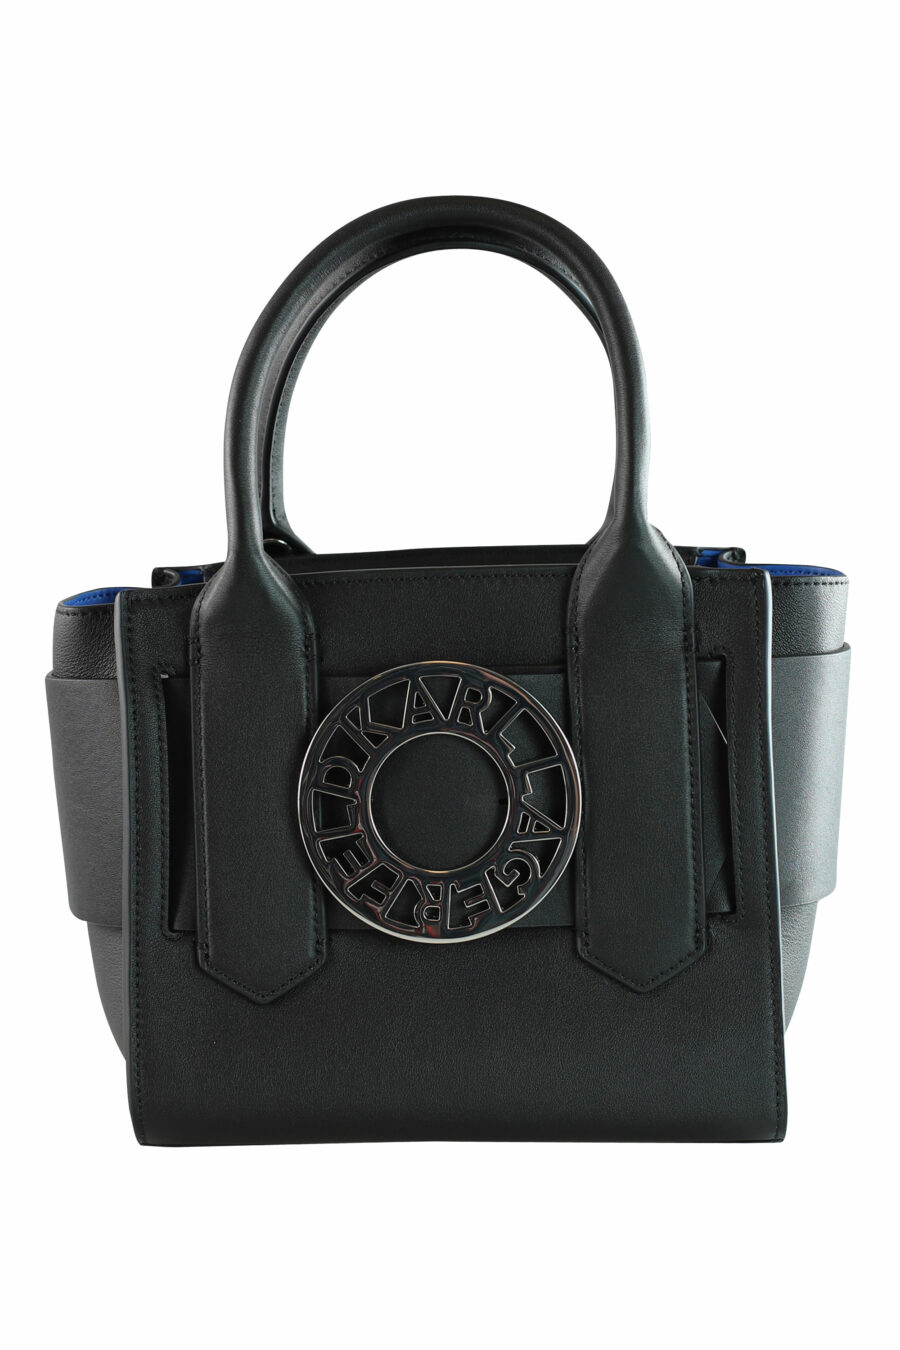 Tote bag mini black with logo "k/disk" - 8720744103363